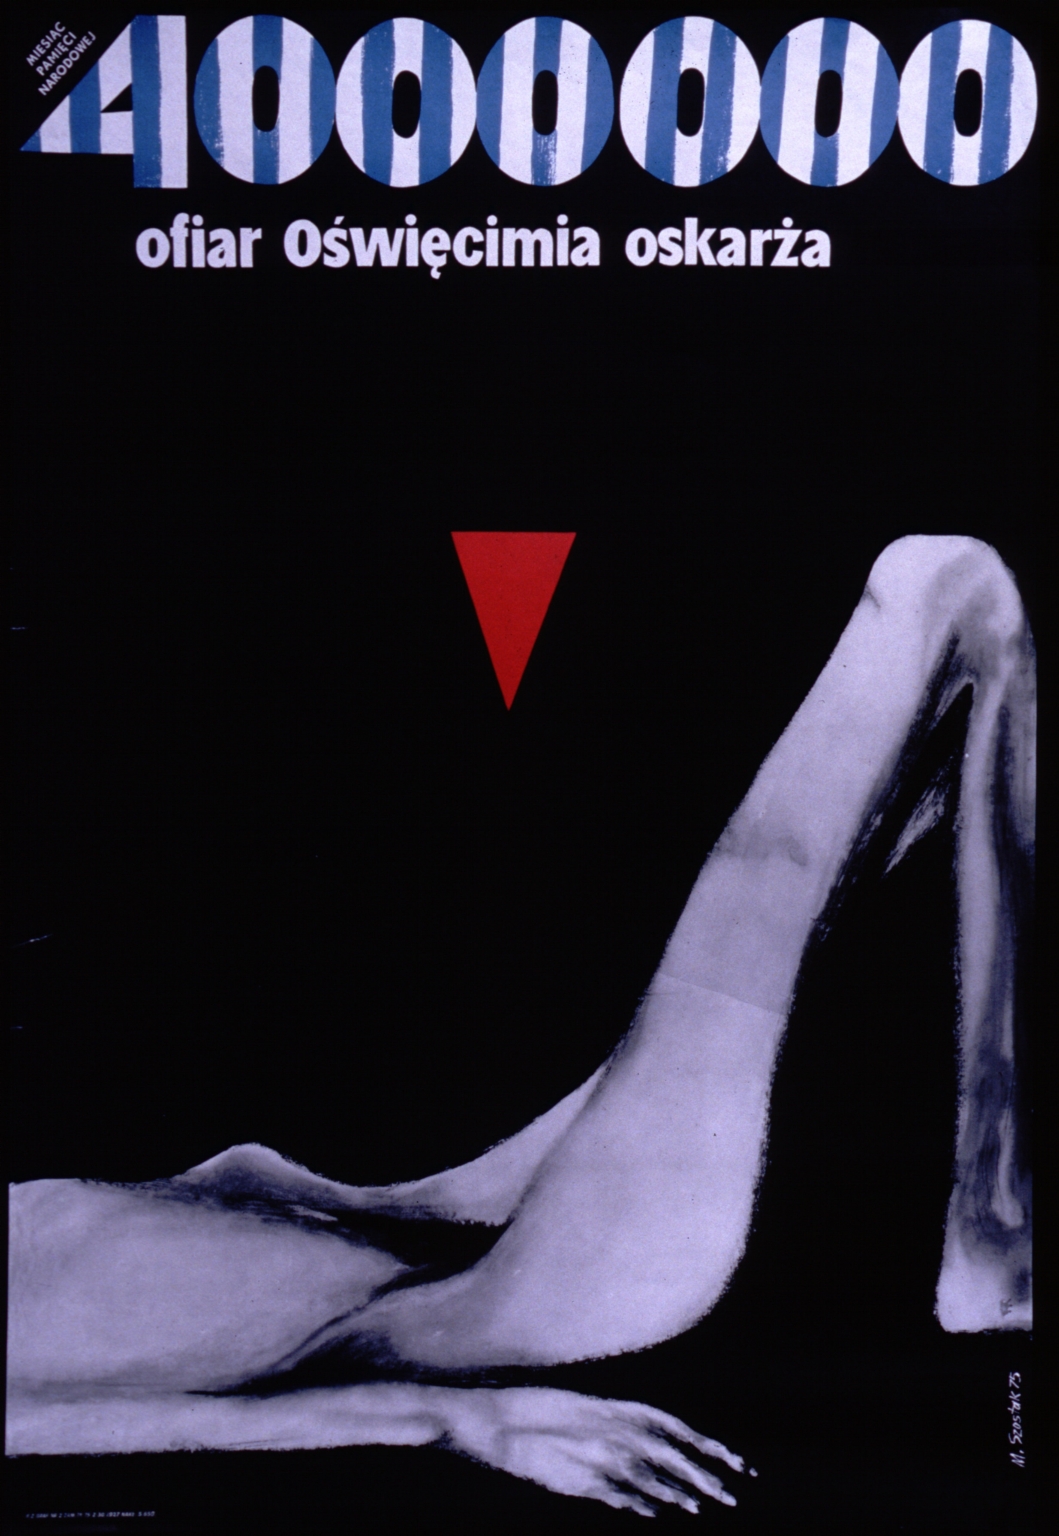 4,000,000 ofiar Oswirecimia oskarza: miesiac pamieci narodowej